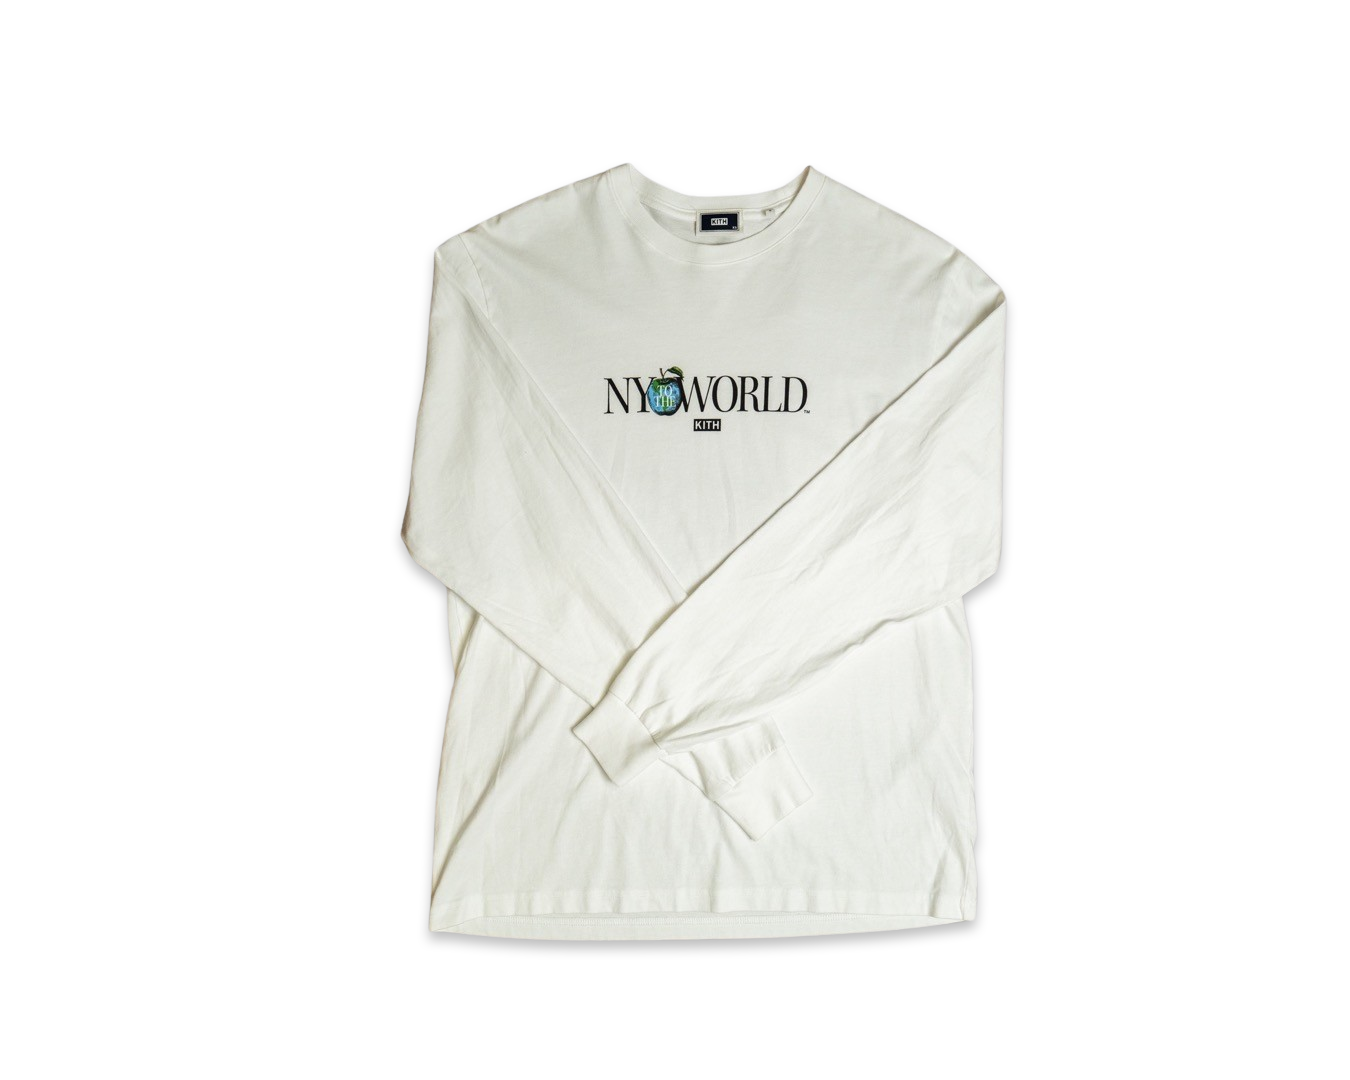 Kith NY to the World L/S T-Shirt White